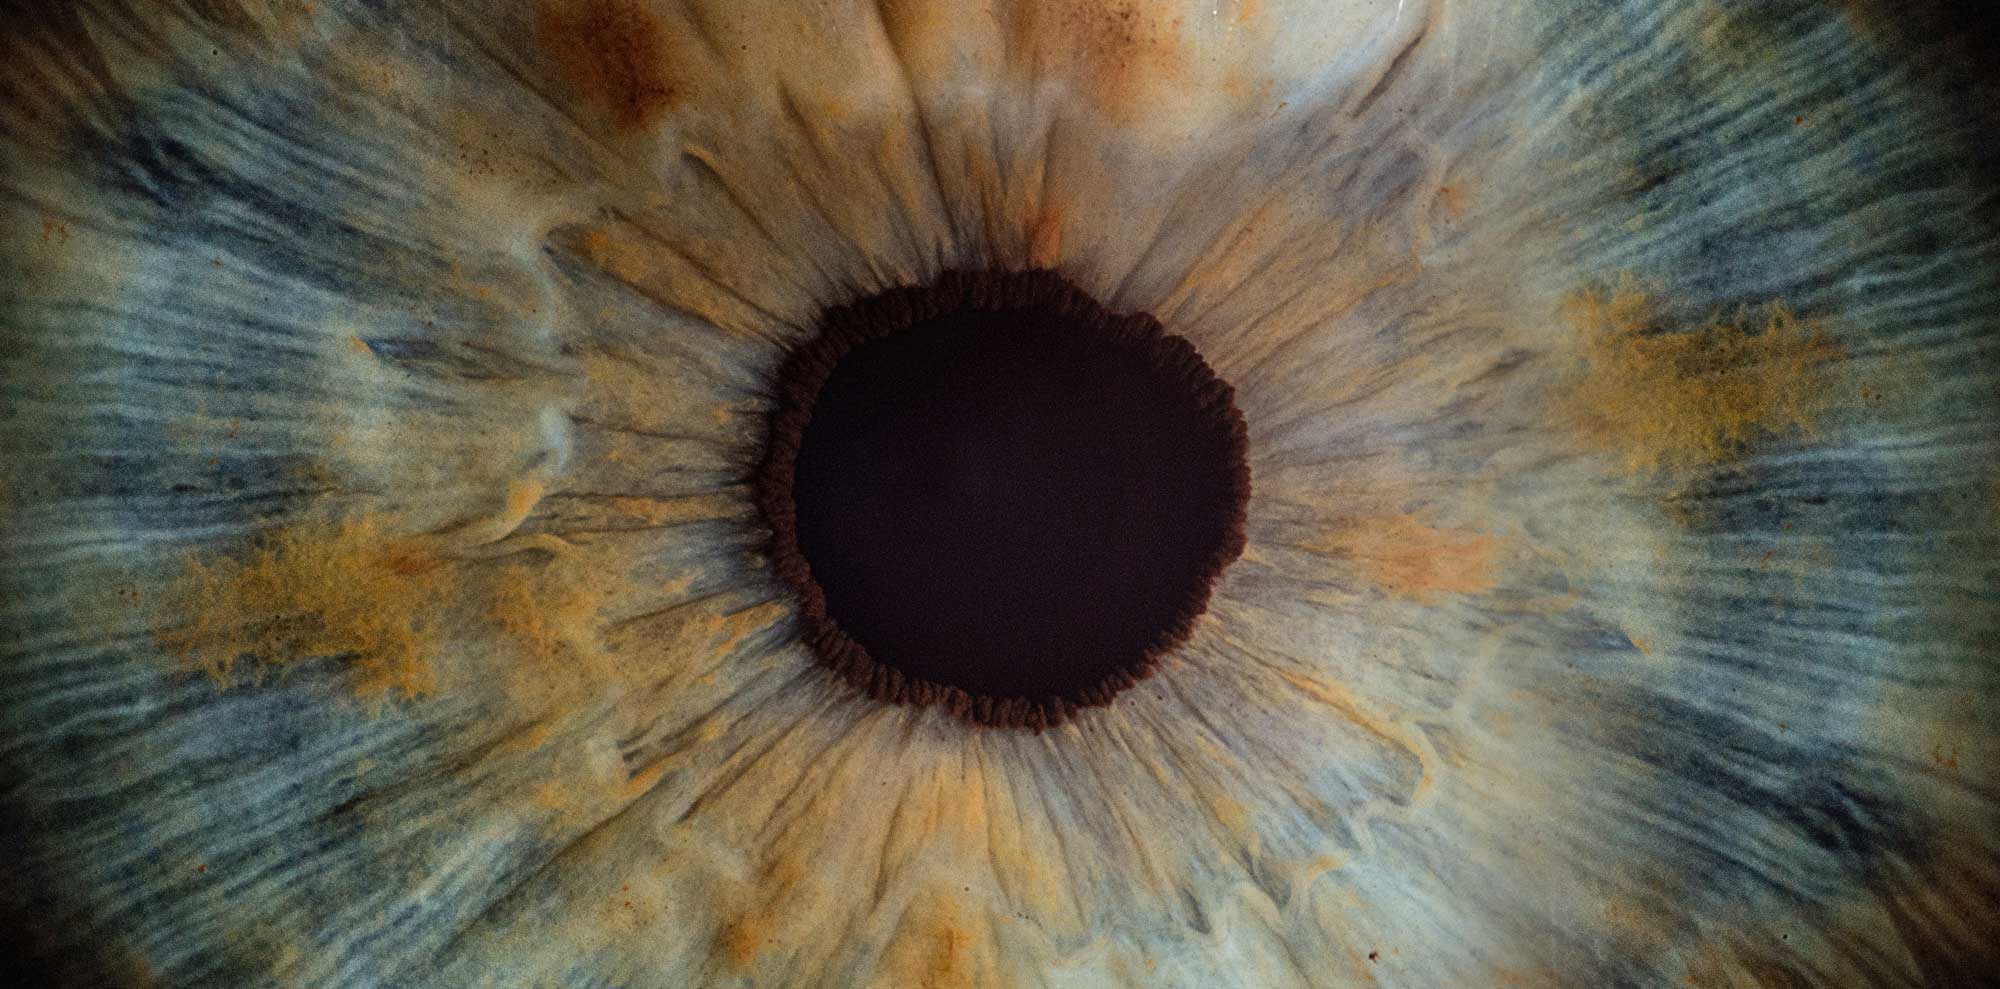 An iris close-up